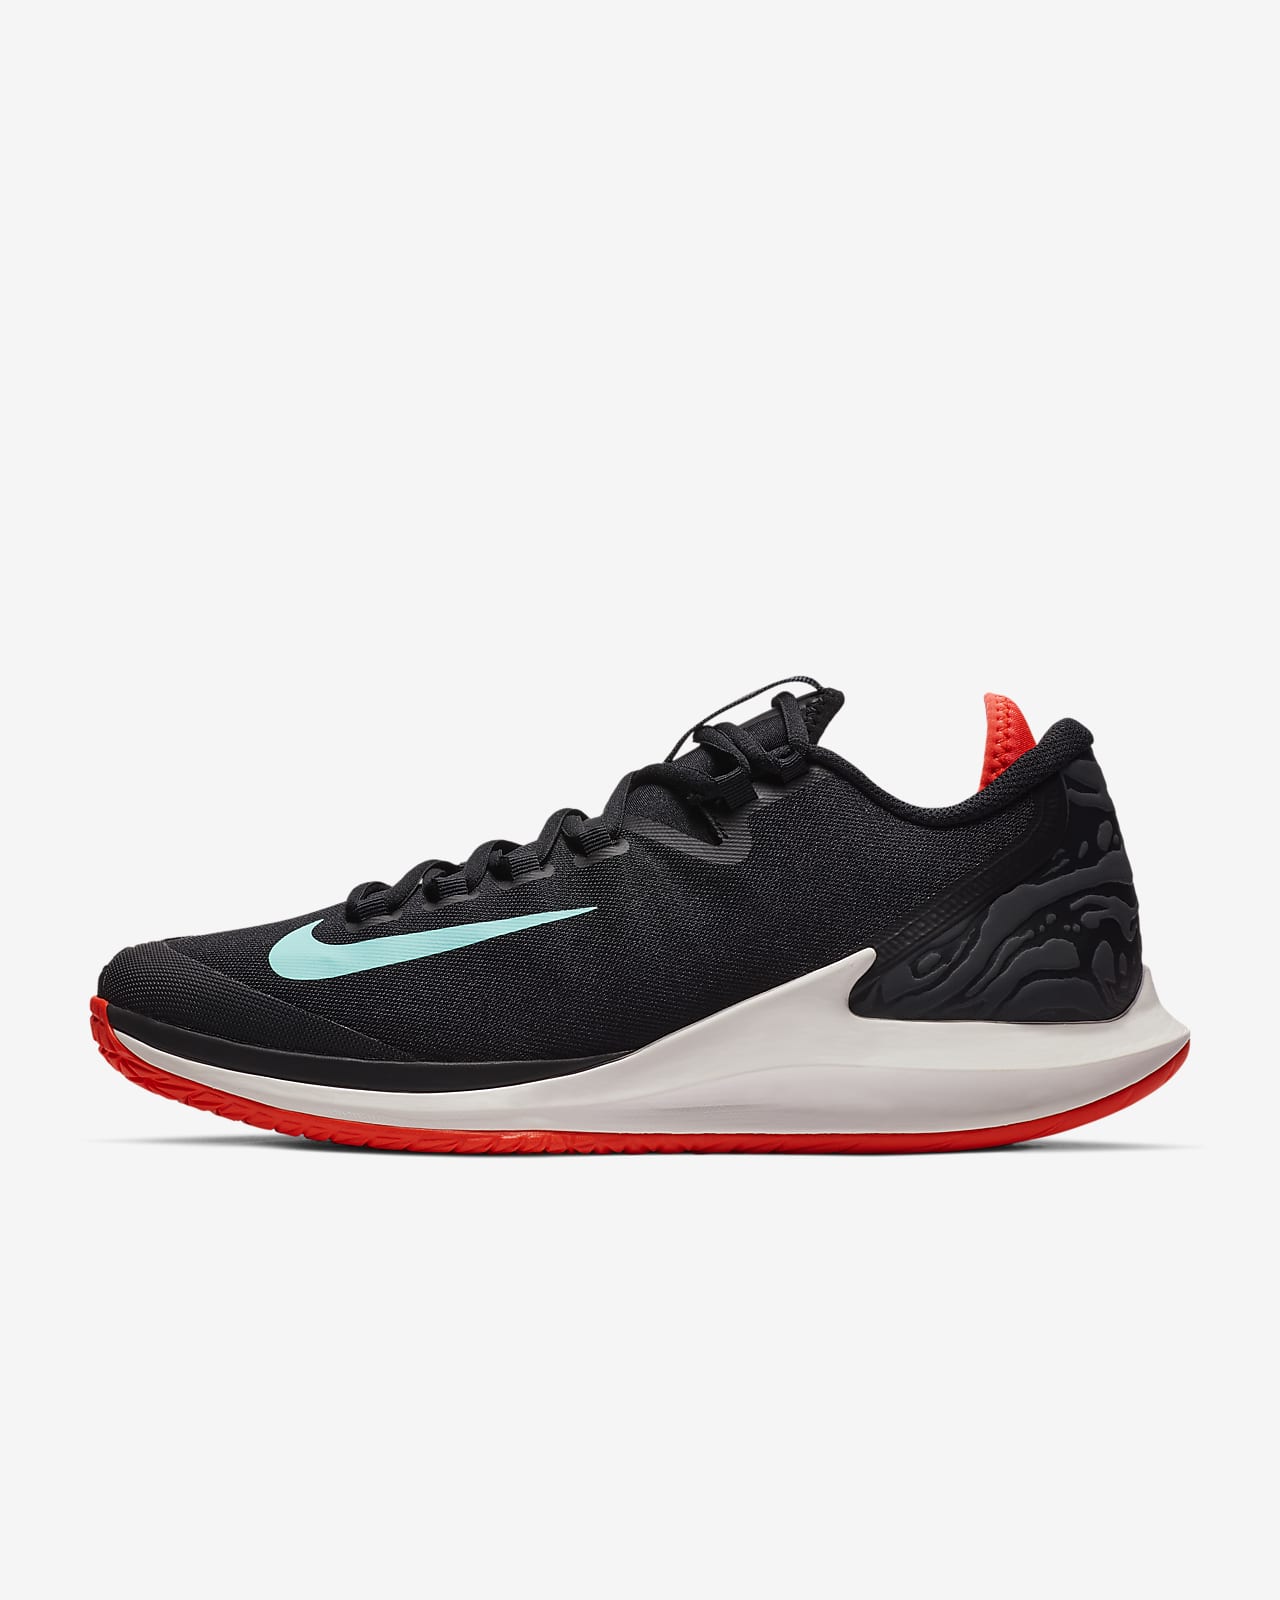 NikeCourt Air Zoom Zero Men's Tennis Shoe